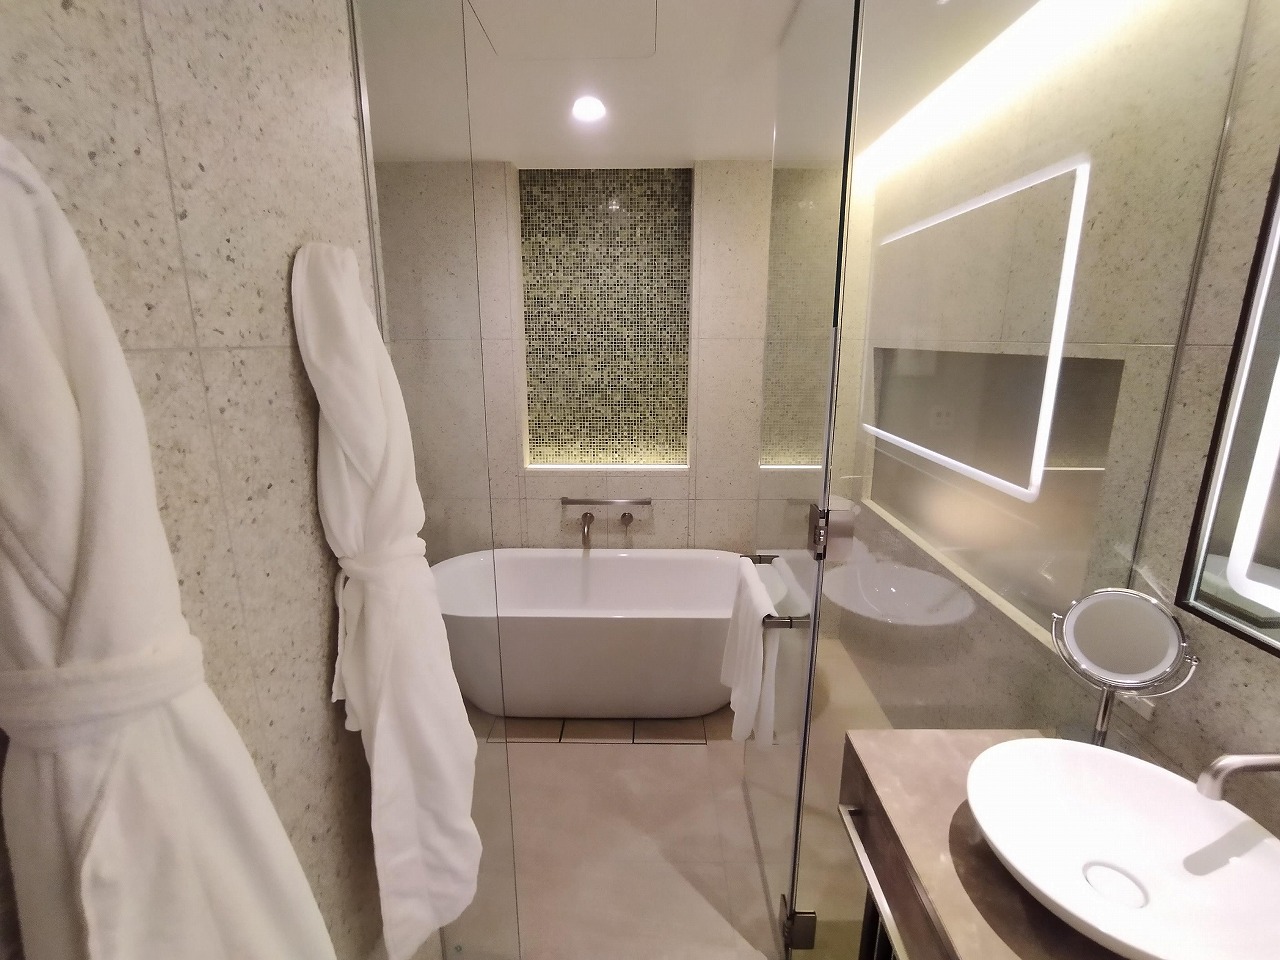 ザ・ホテル青龍 京都清水バスルーム